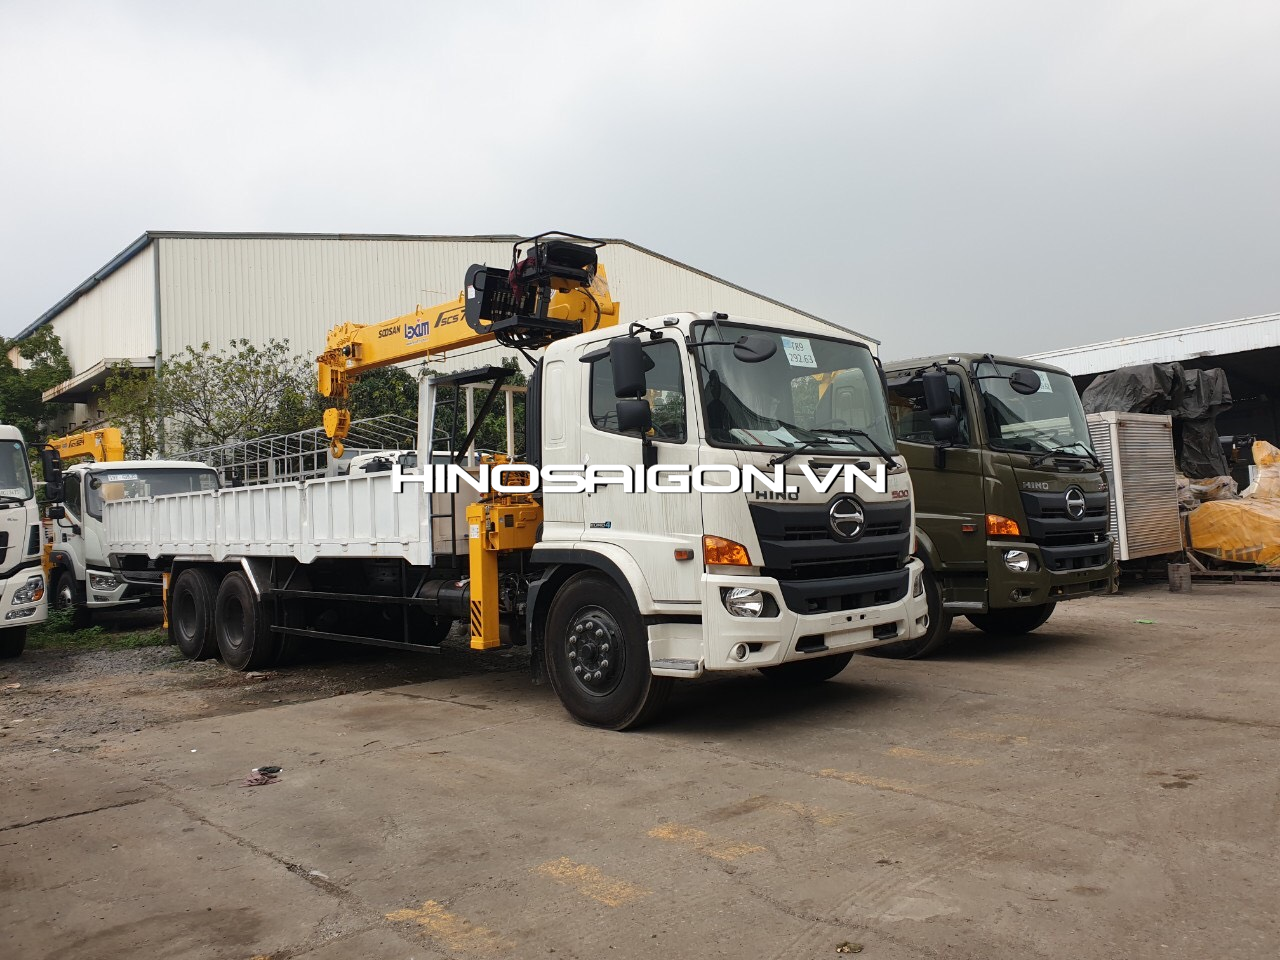 Hinosaigon.vn - Giới thiệu các mẫu thùng xe tải được đóng theo yêu cầu khách hàng tại xưởng công ty